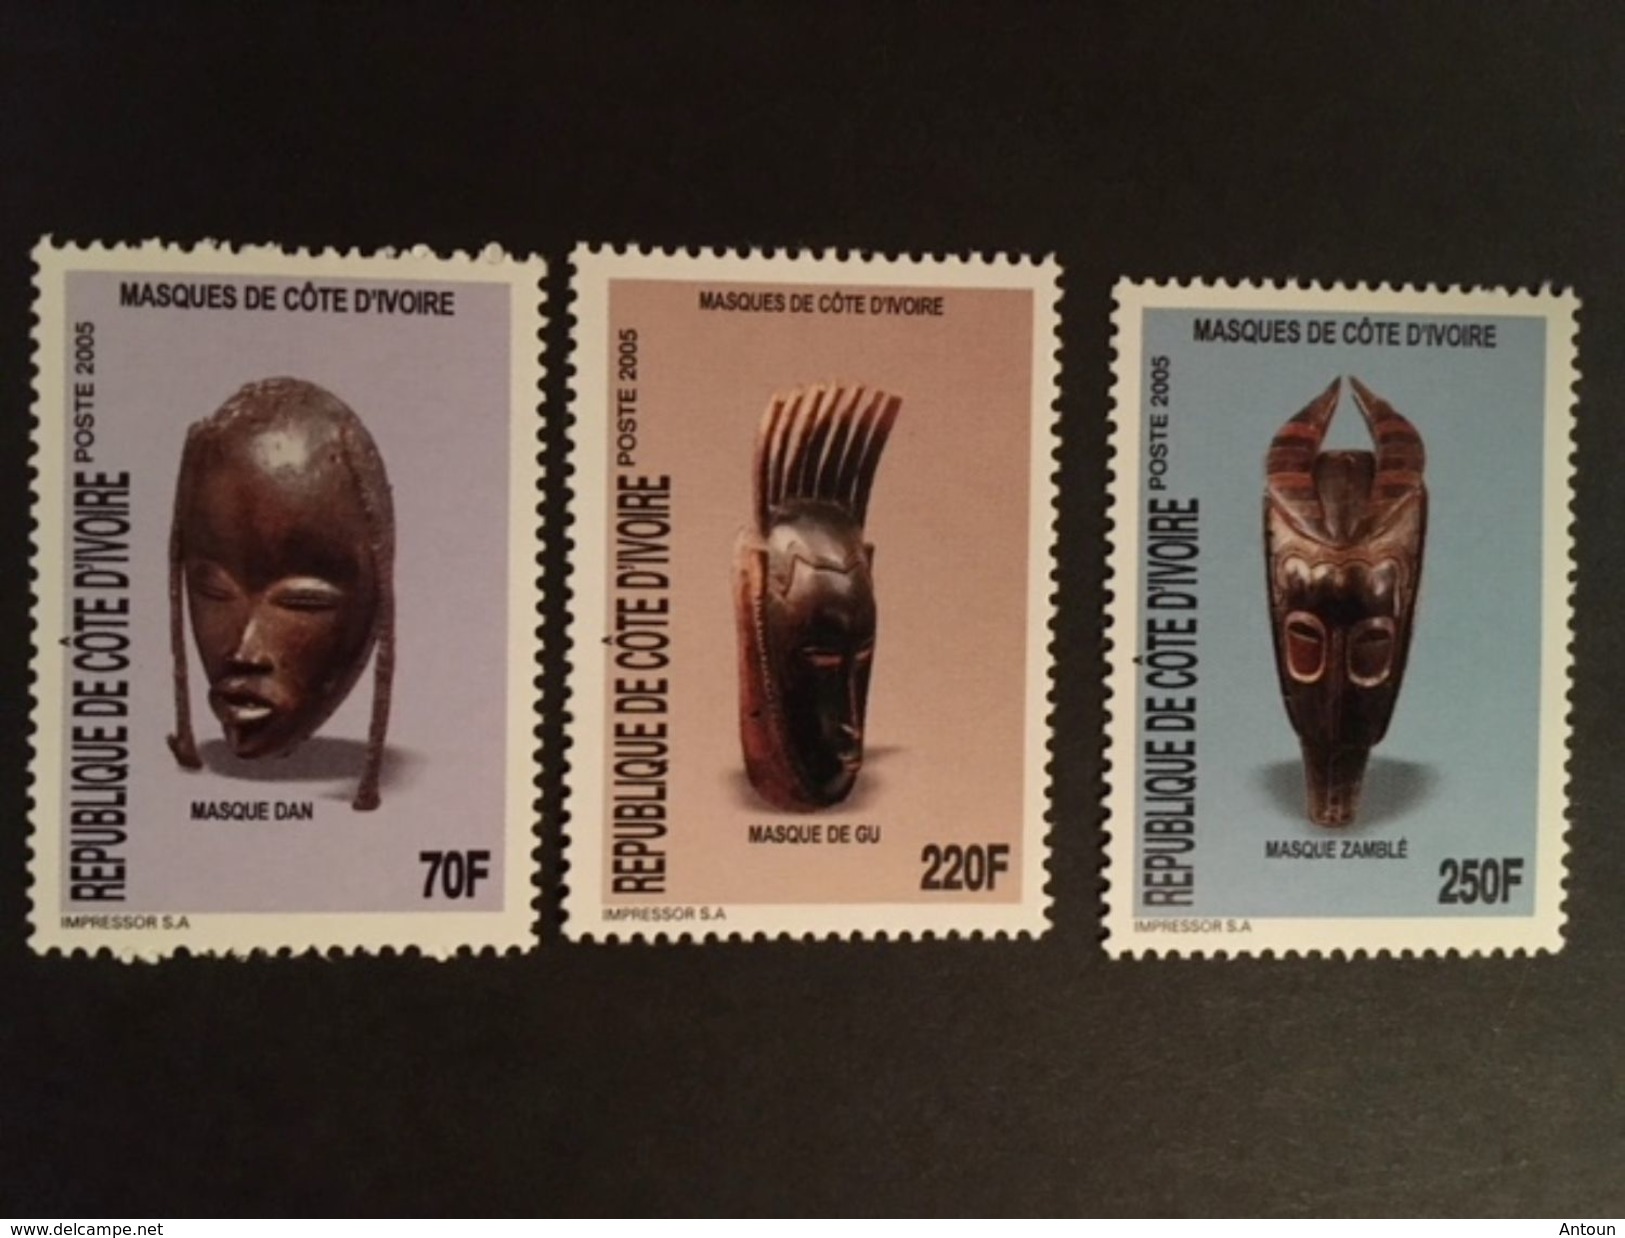 Ivory Coast Masks 2005   Postage Extra On All Items - Ivory Coast (1960-...)